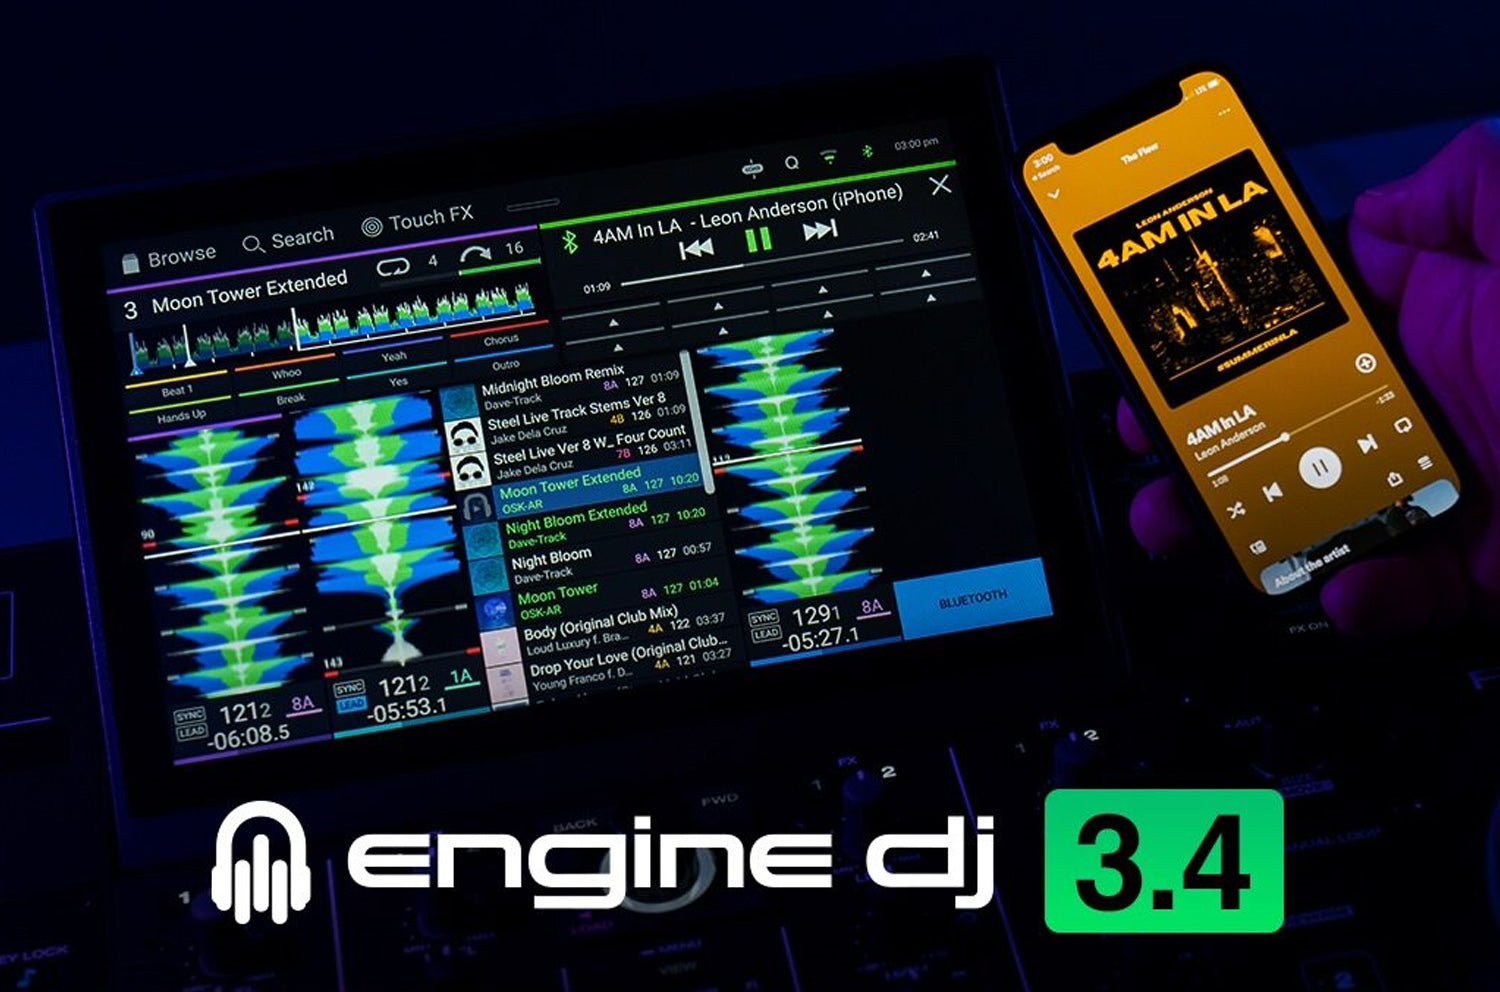 Engine DJ 3.4 Released